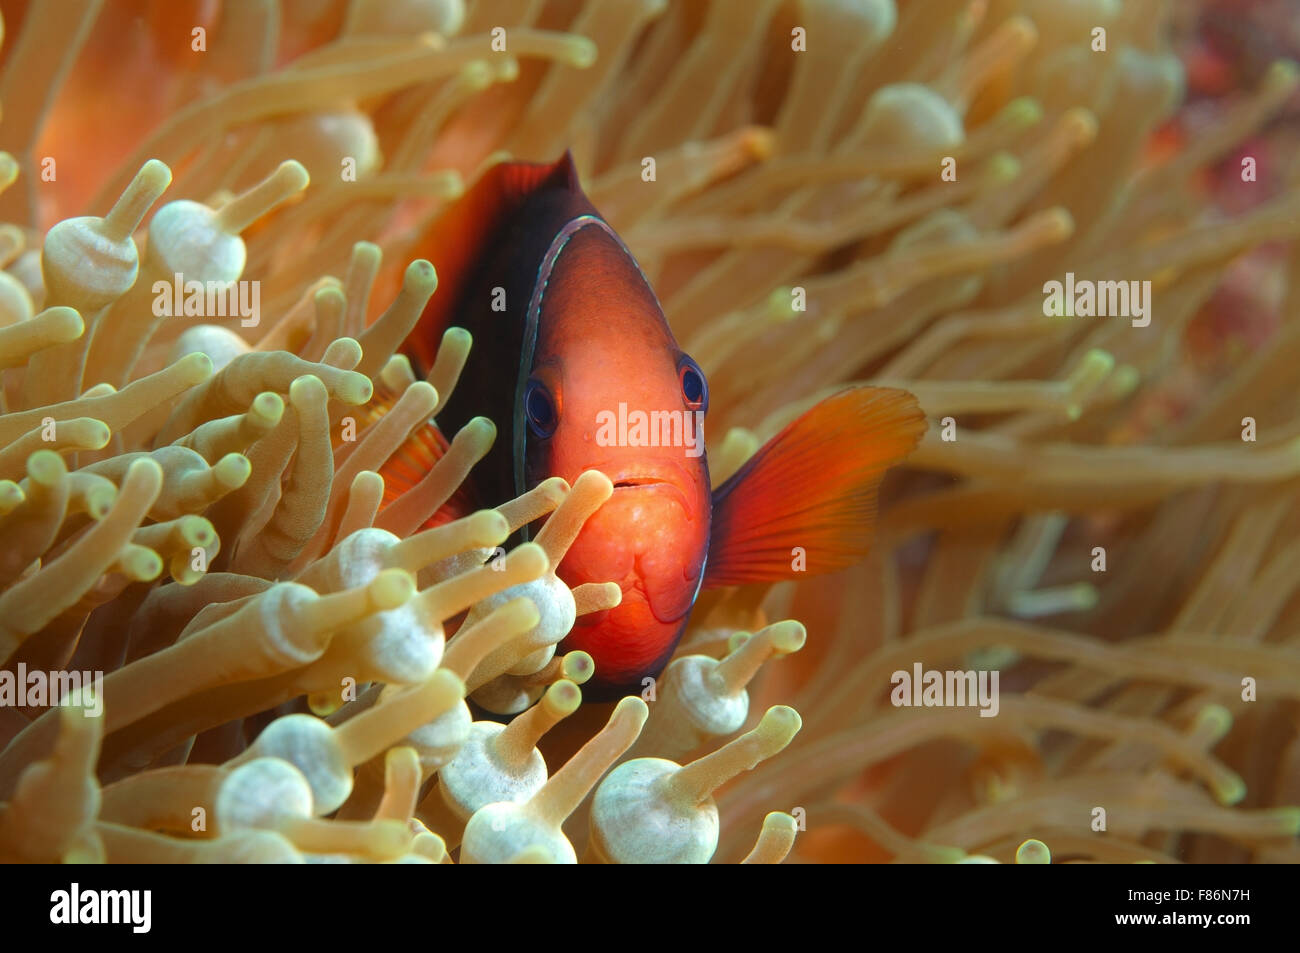 Cinnamon clownfish, red and black anemonefish, black-backed anemonefish or dusky anemonefish (Amphiprion melanopus) South China  Stock Photo